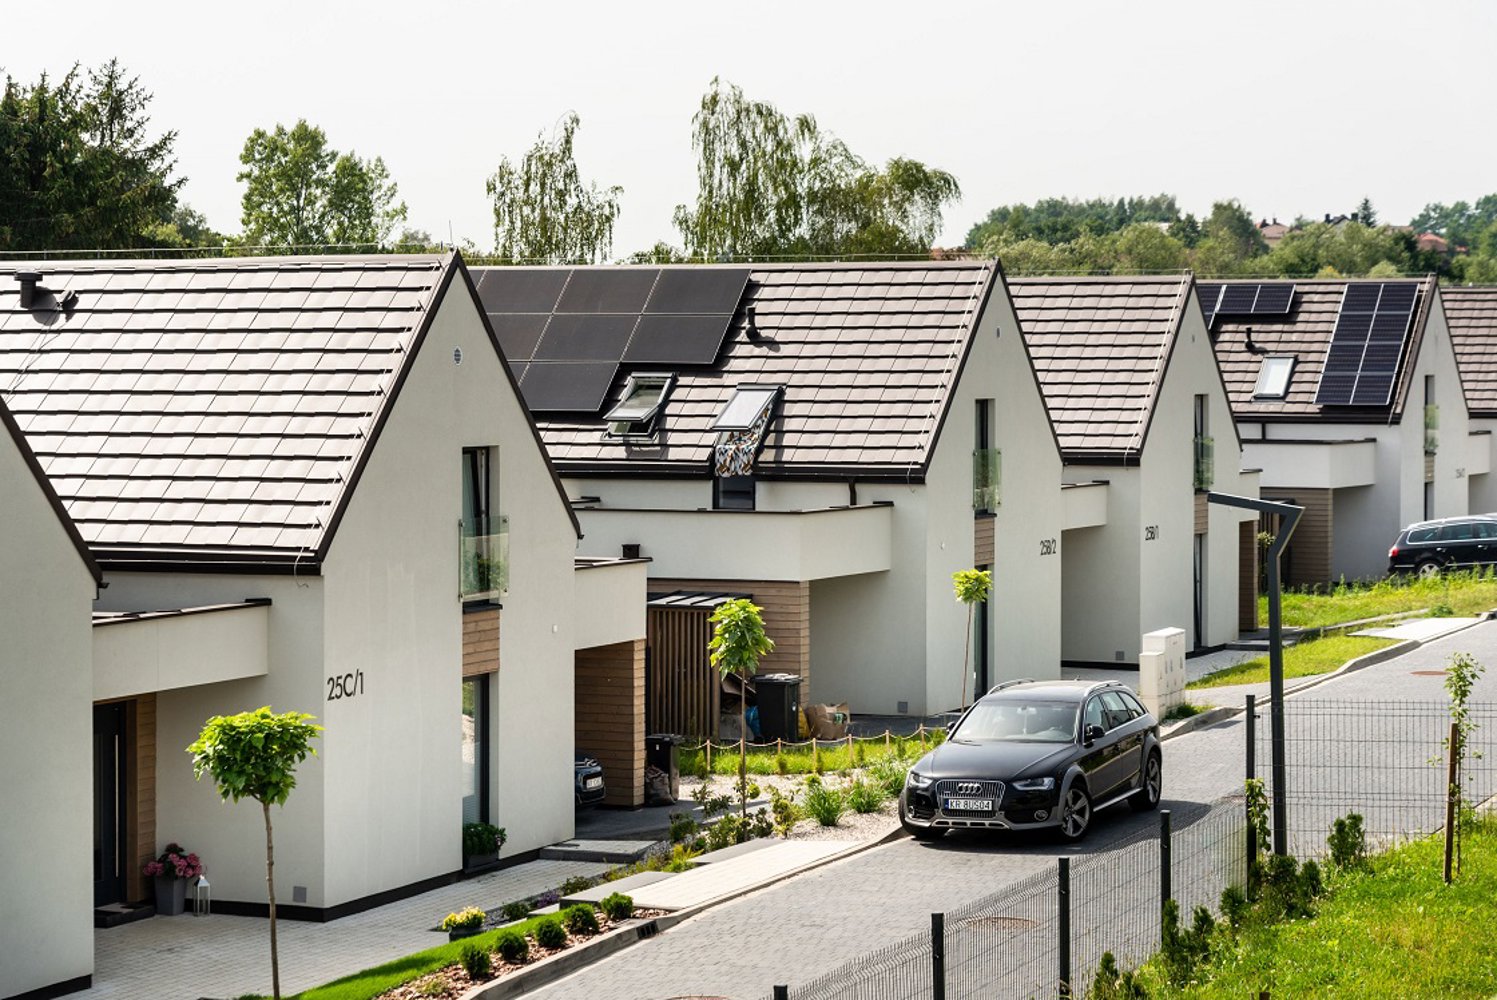 Okna OknoPlus wykorzystane w projekcie nowoczesnego osiedla domów energooszczędnych od HausWerk